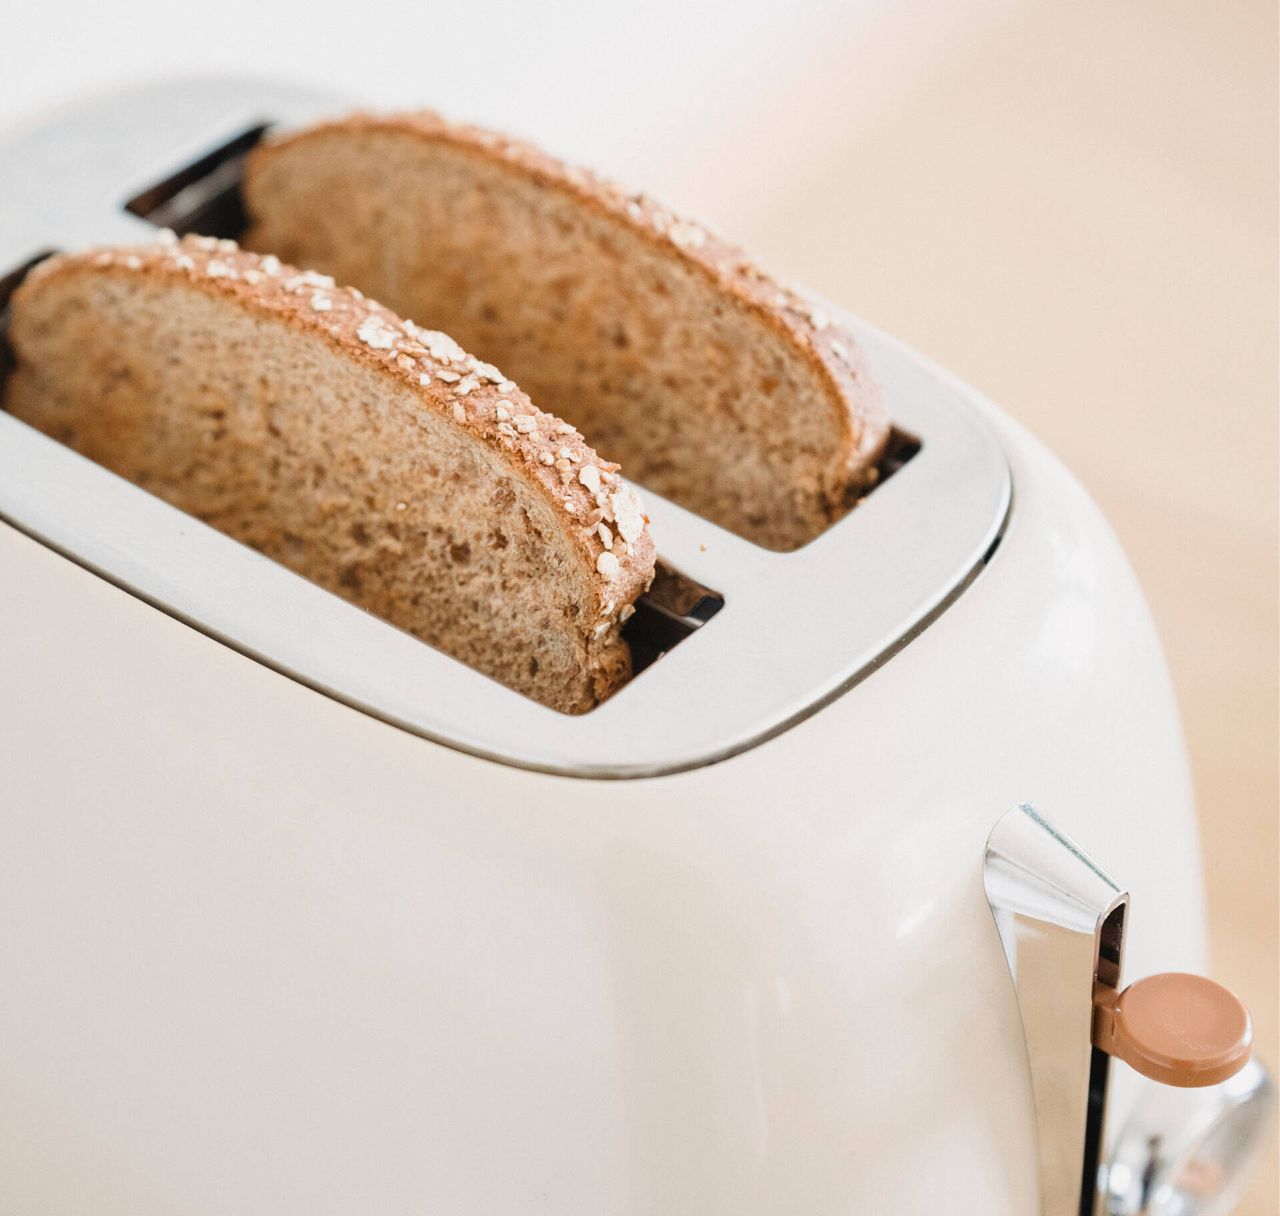 Jak rozmrozić chleb - Pyszności; Foto: Canva